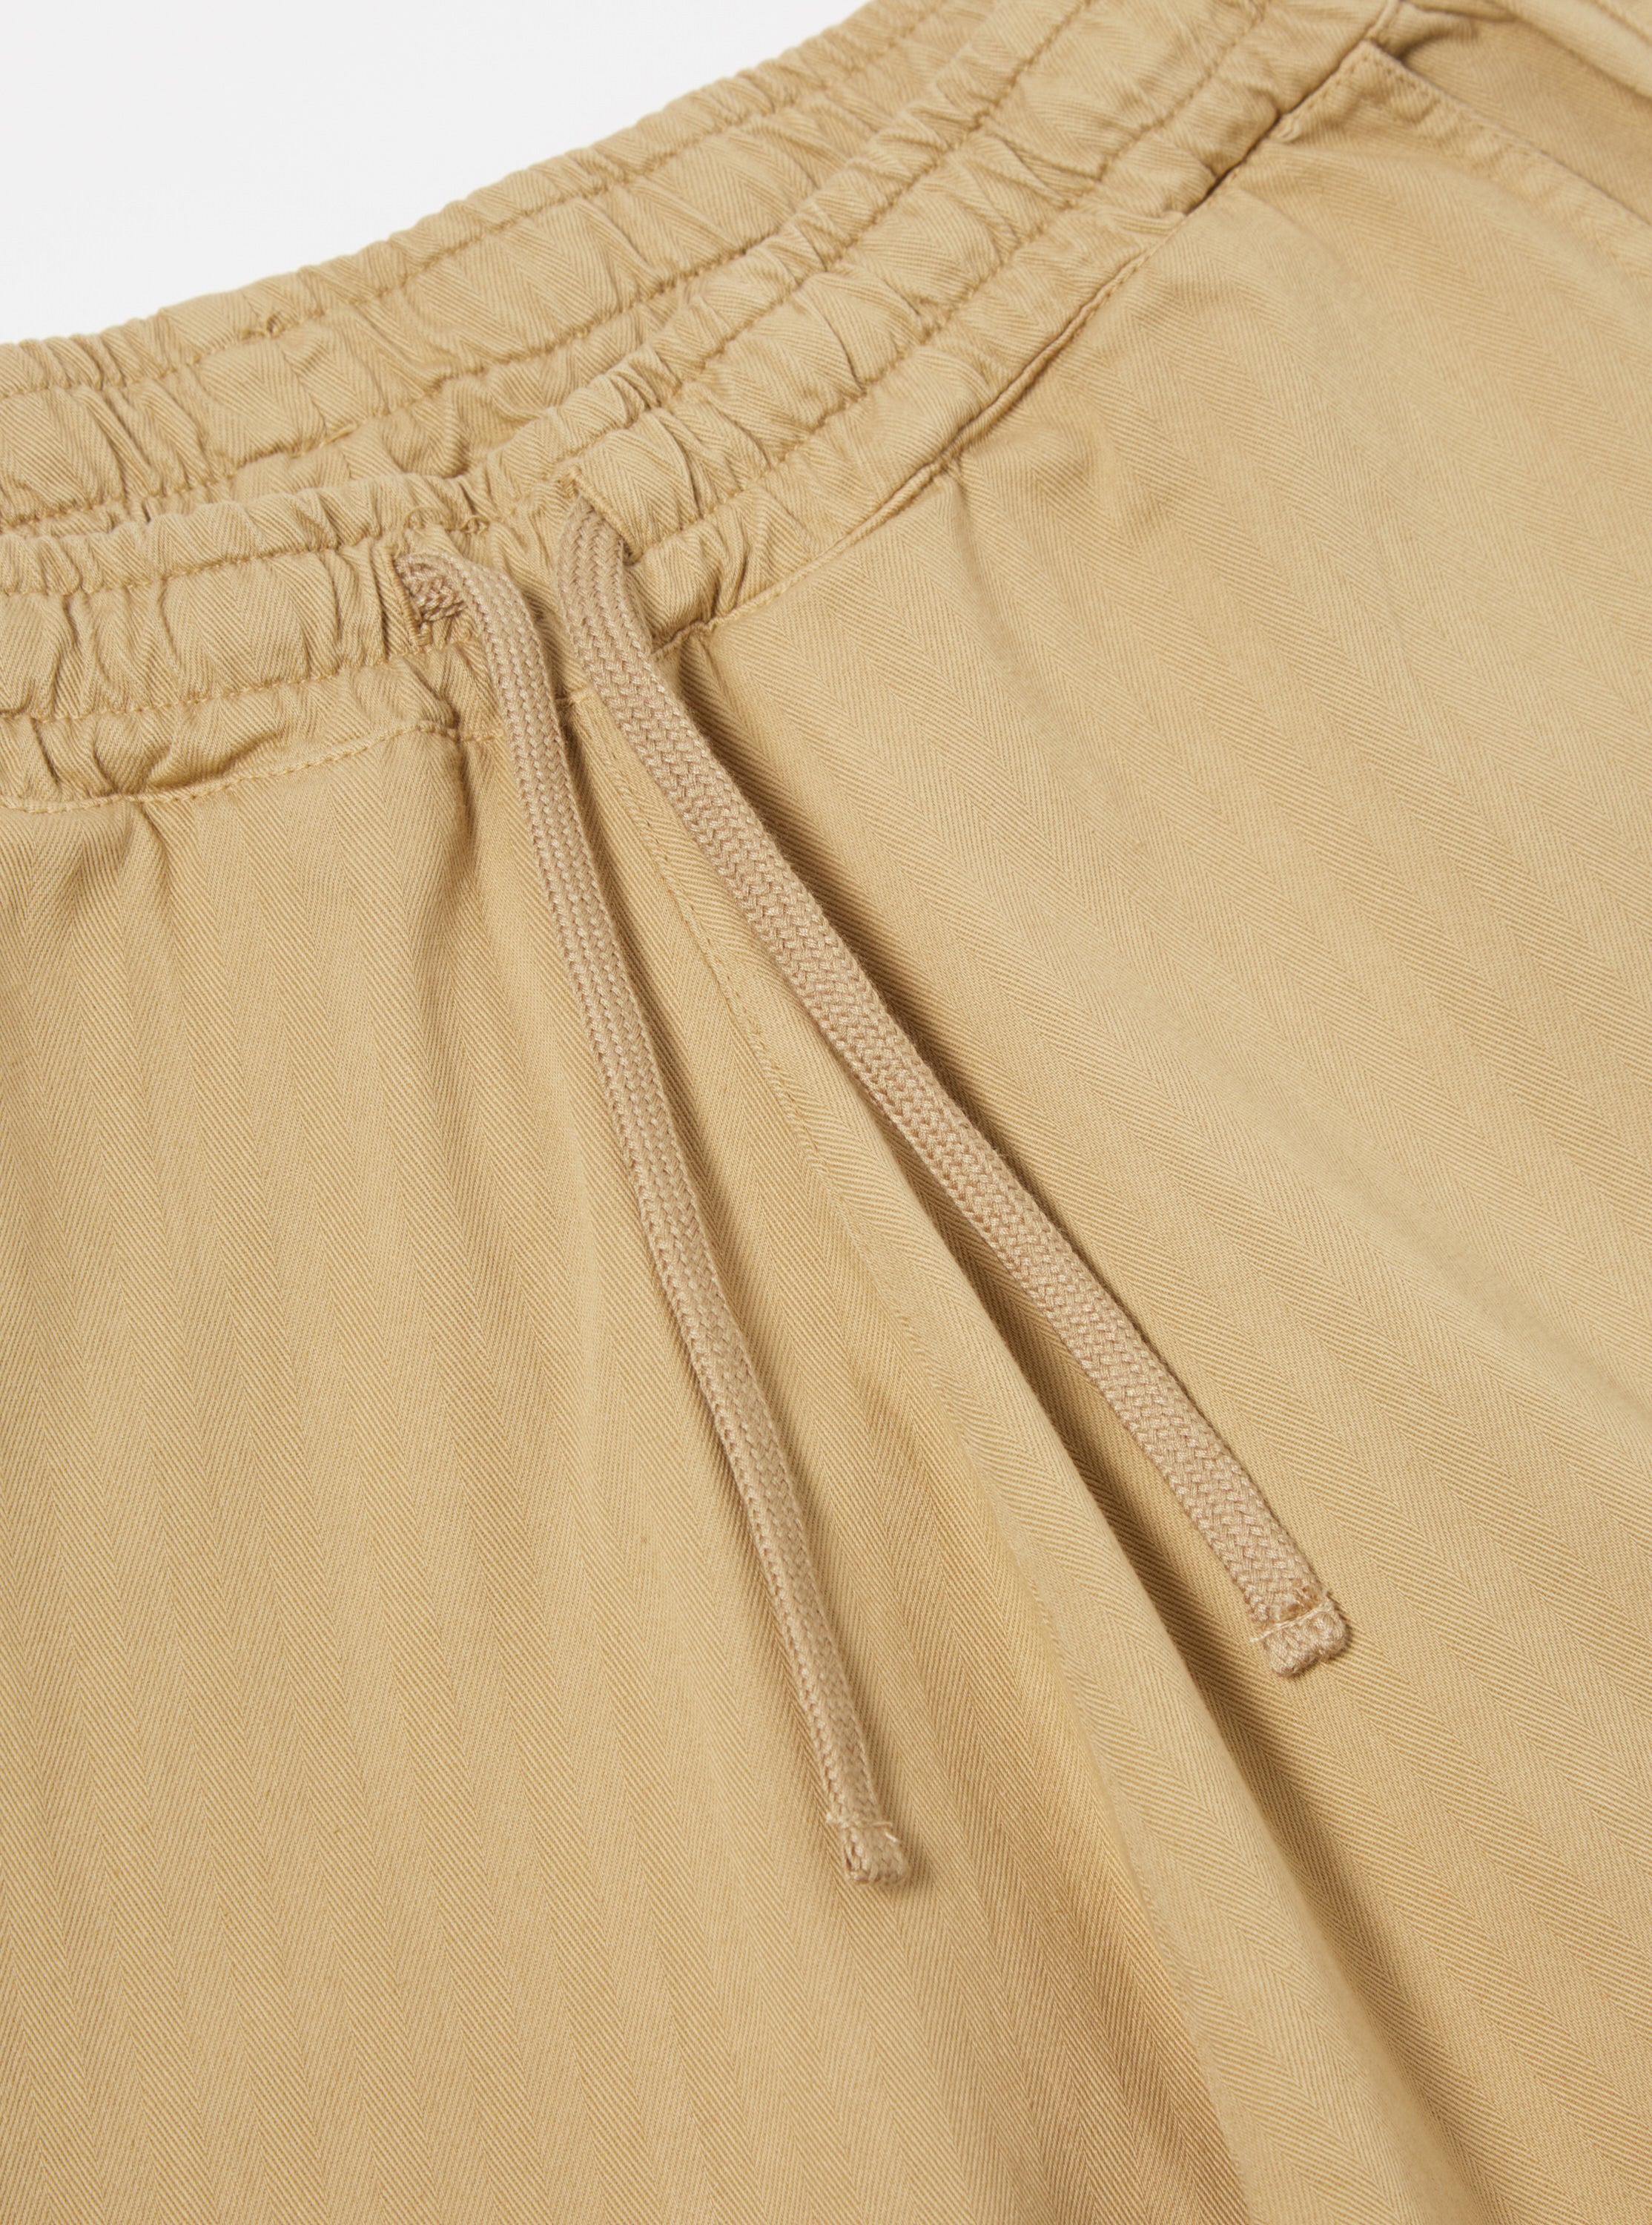 Universal Works Lumber Short in Sand Italian Herringbone Cotton